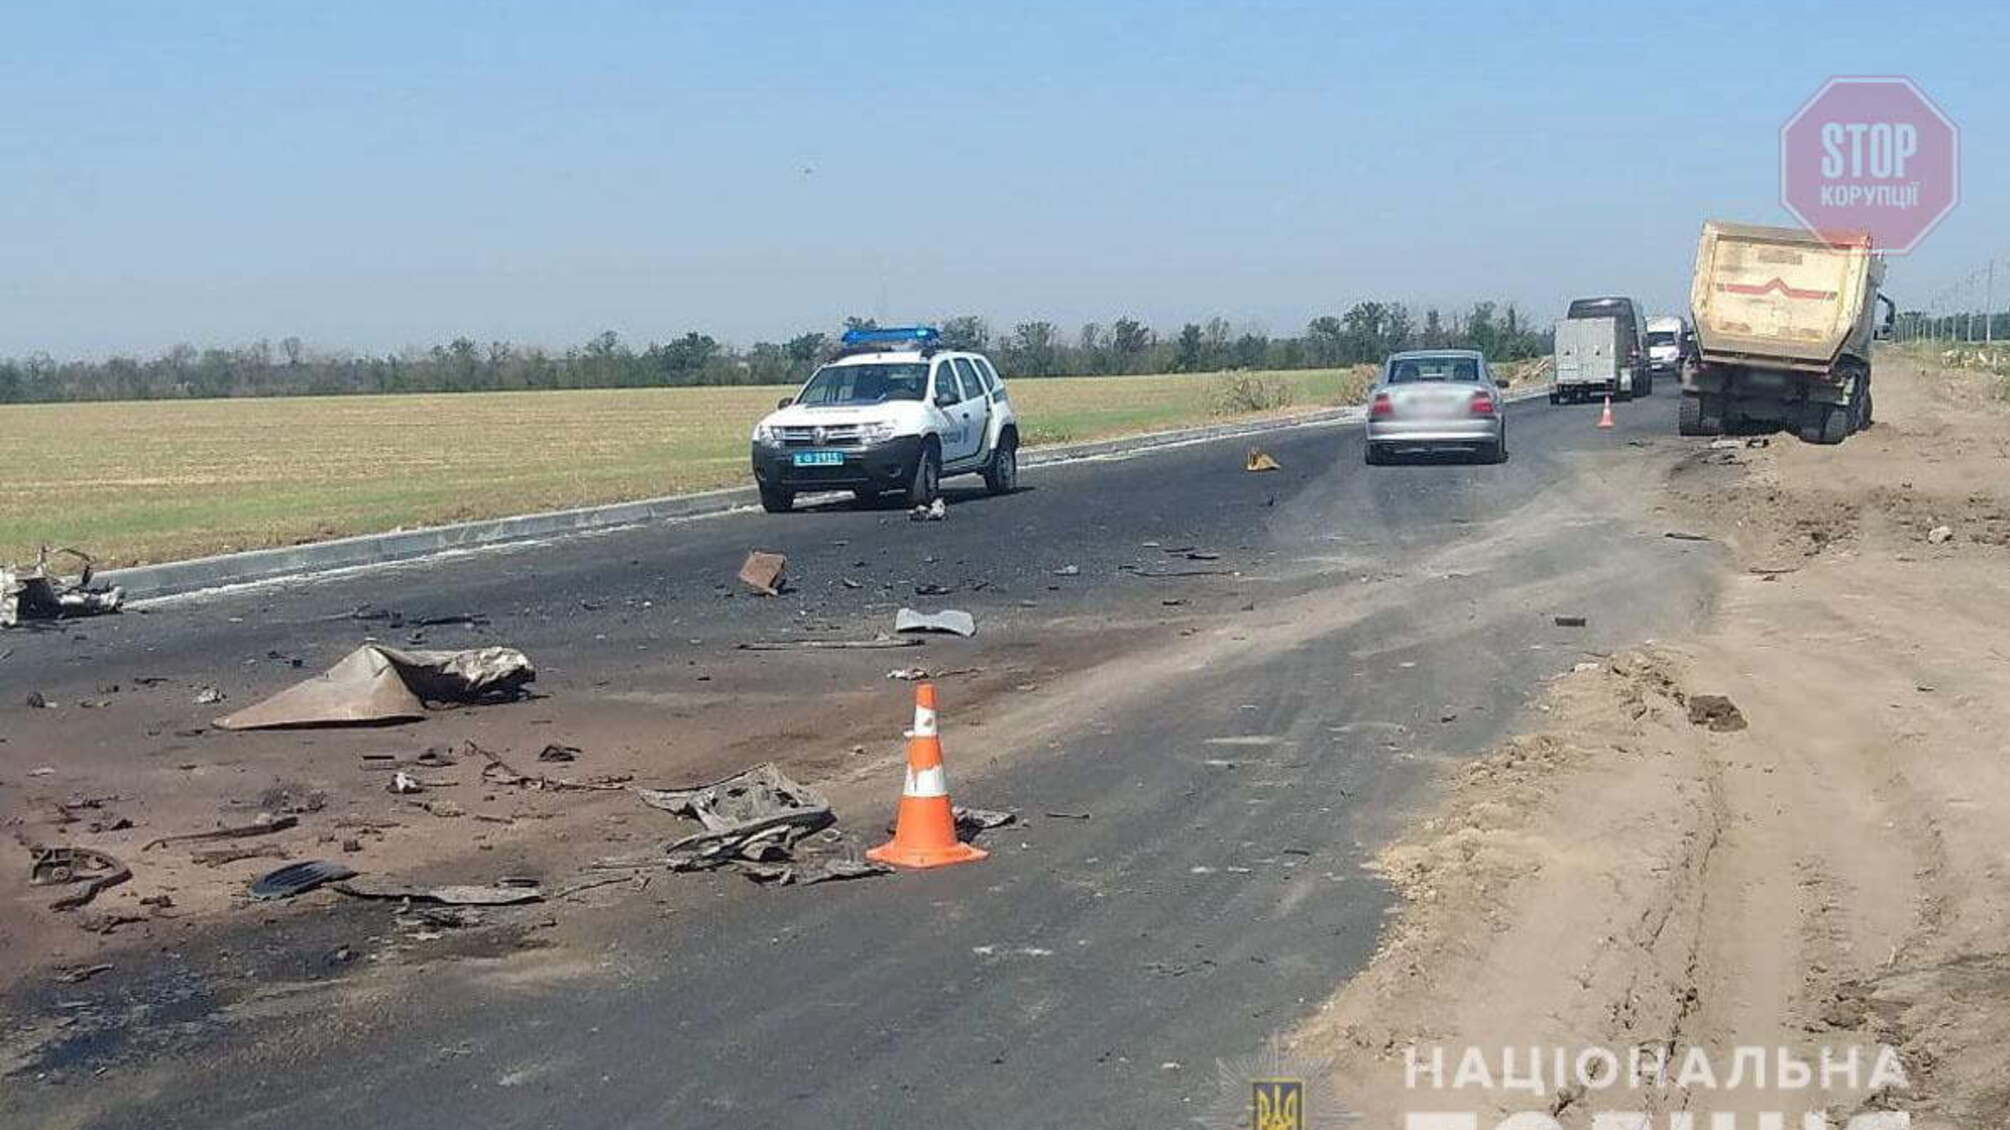 В Донецкой области автомобиль врезался в грузовик, есть погибшие (фото)